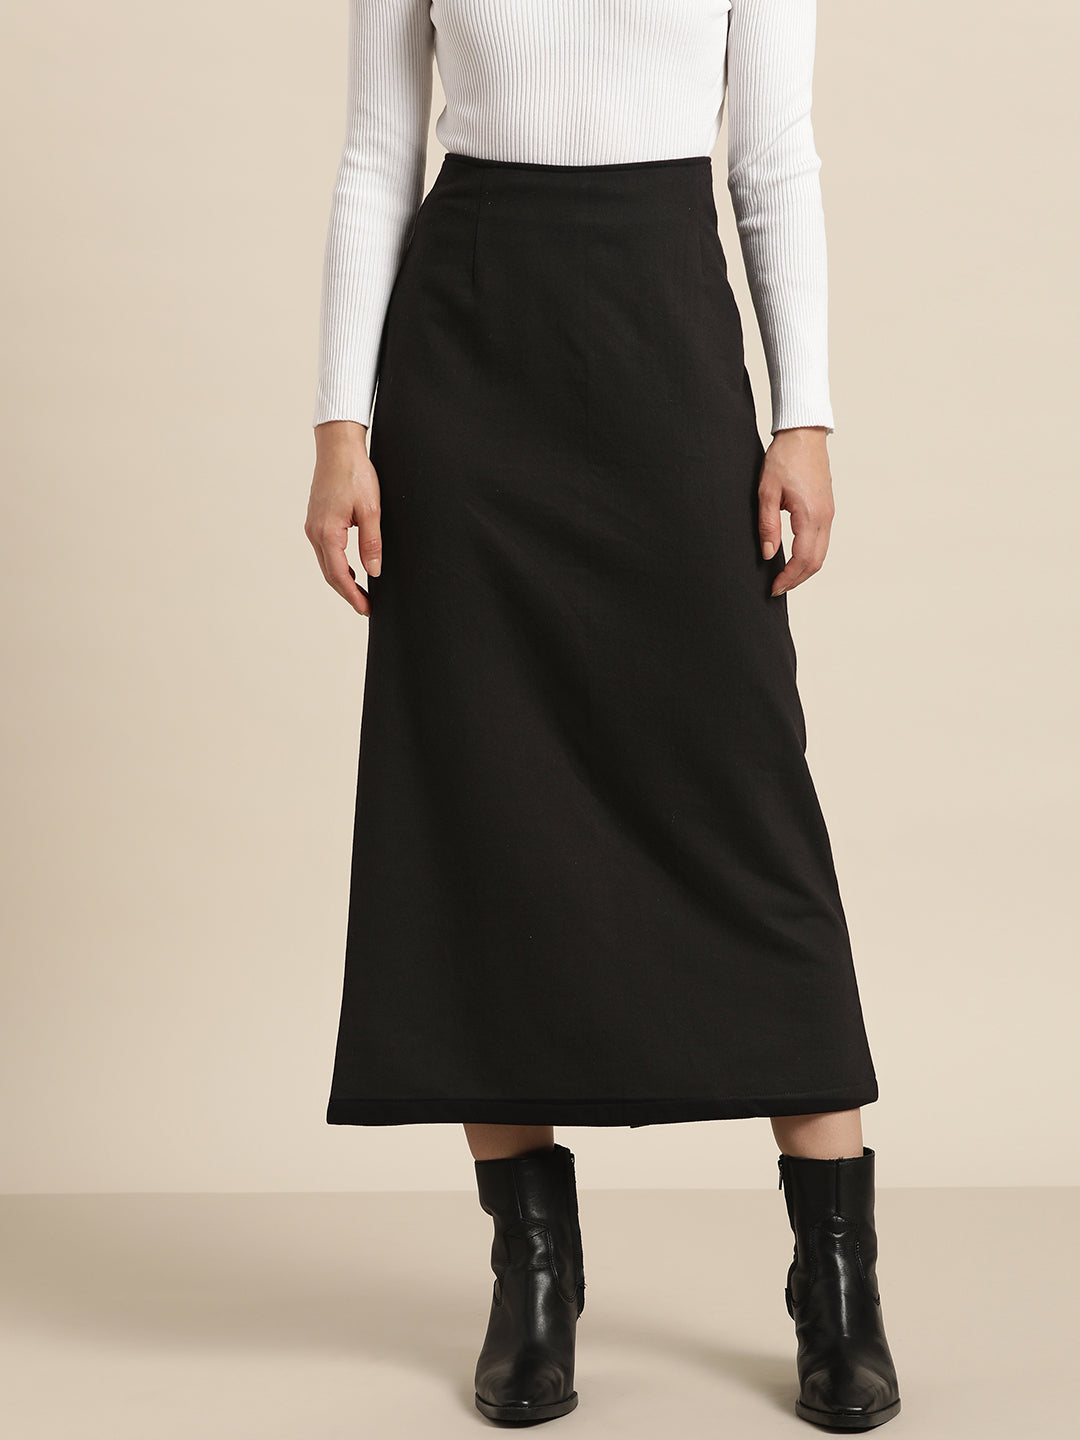 Solid black fleece long skirt